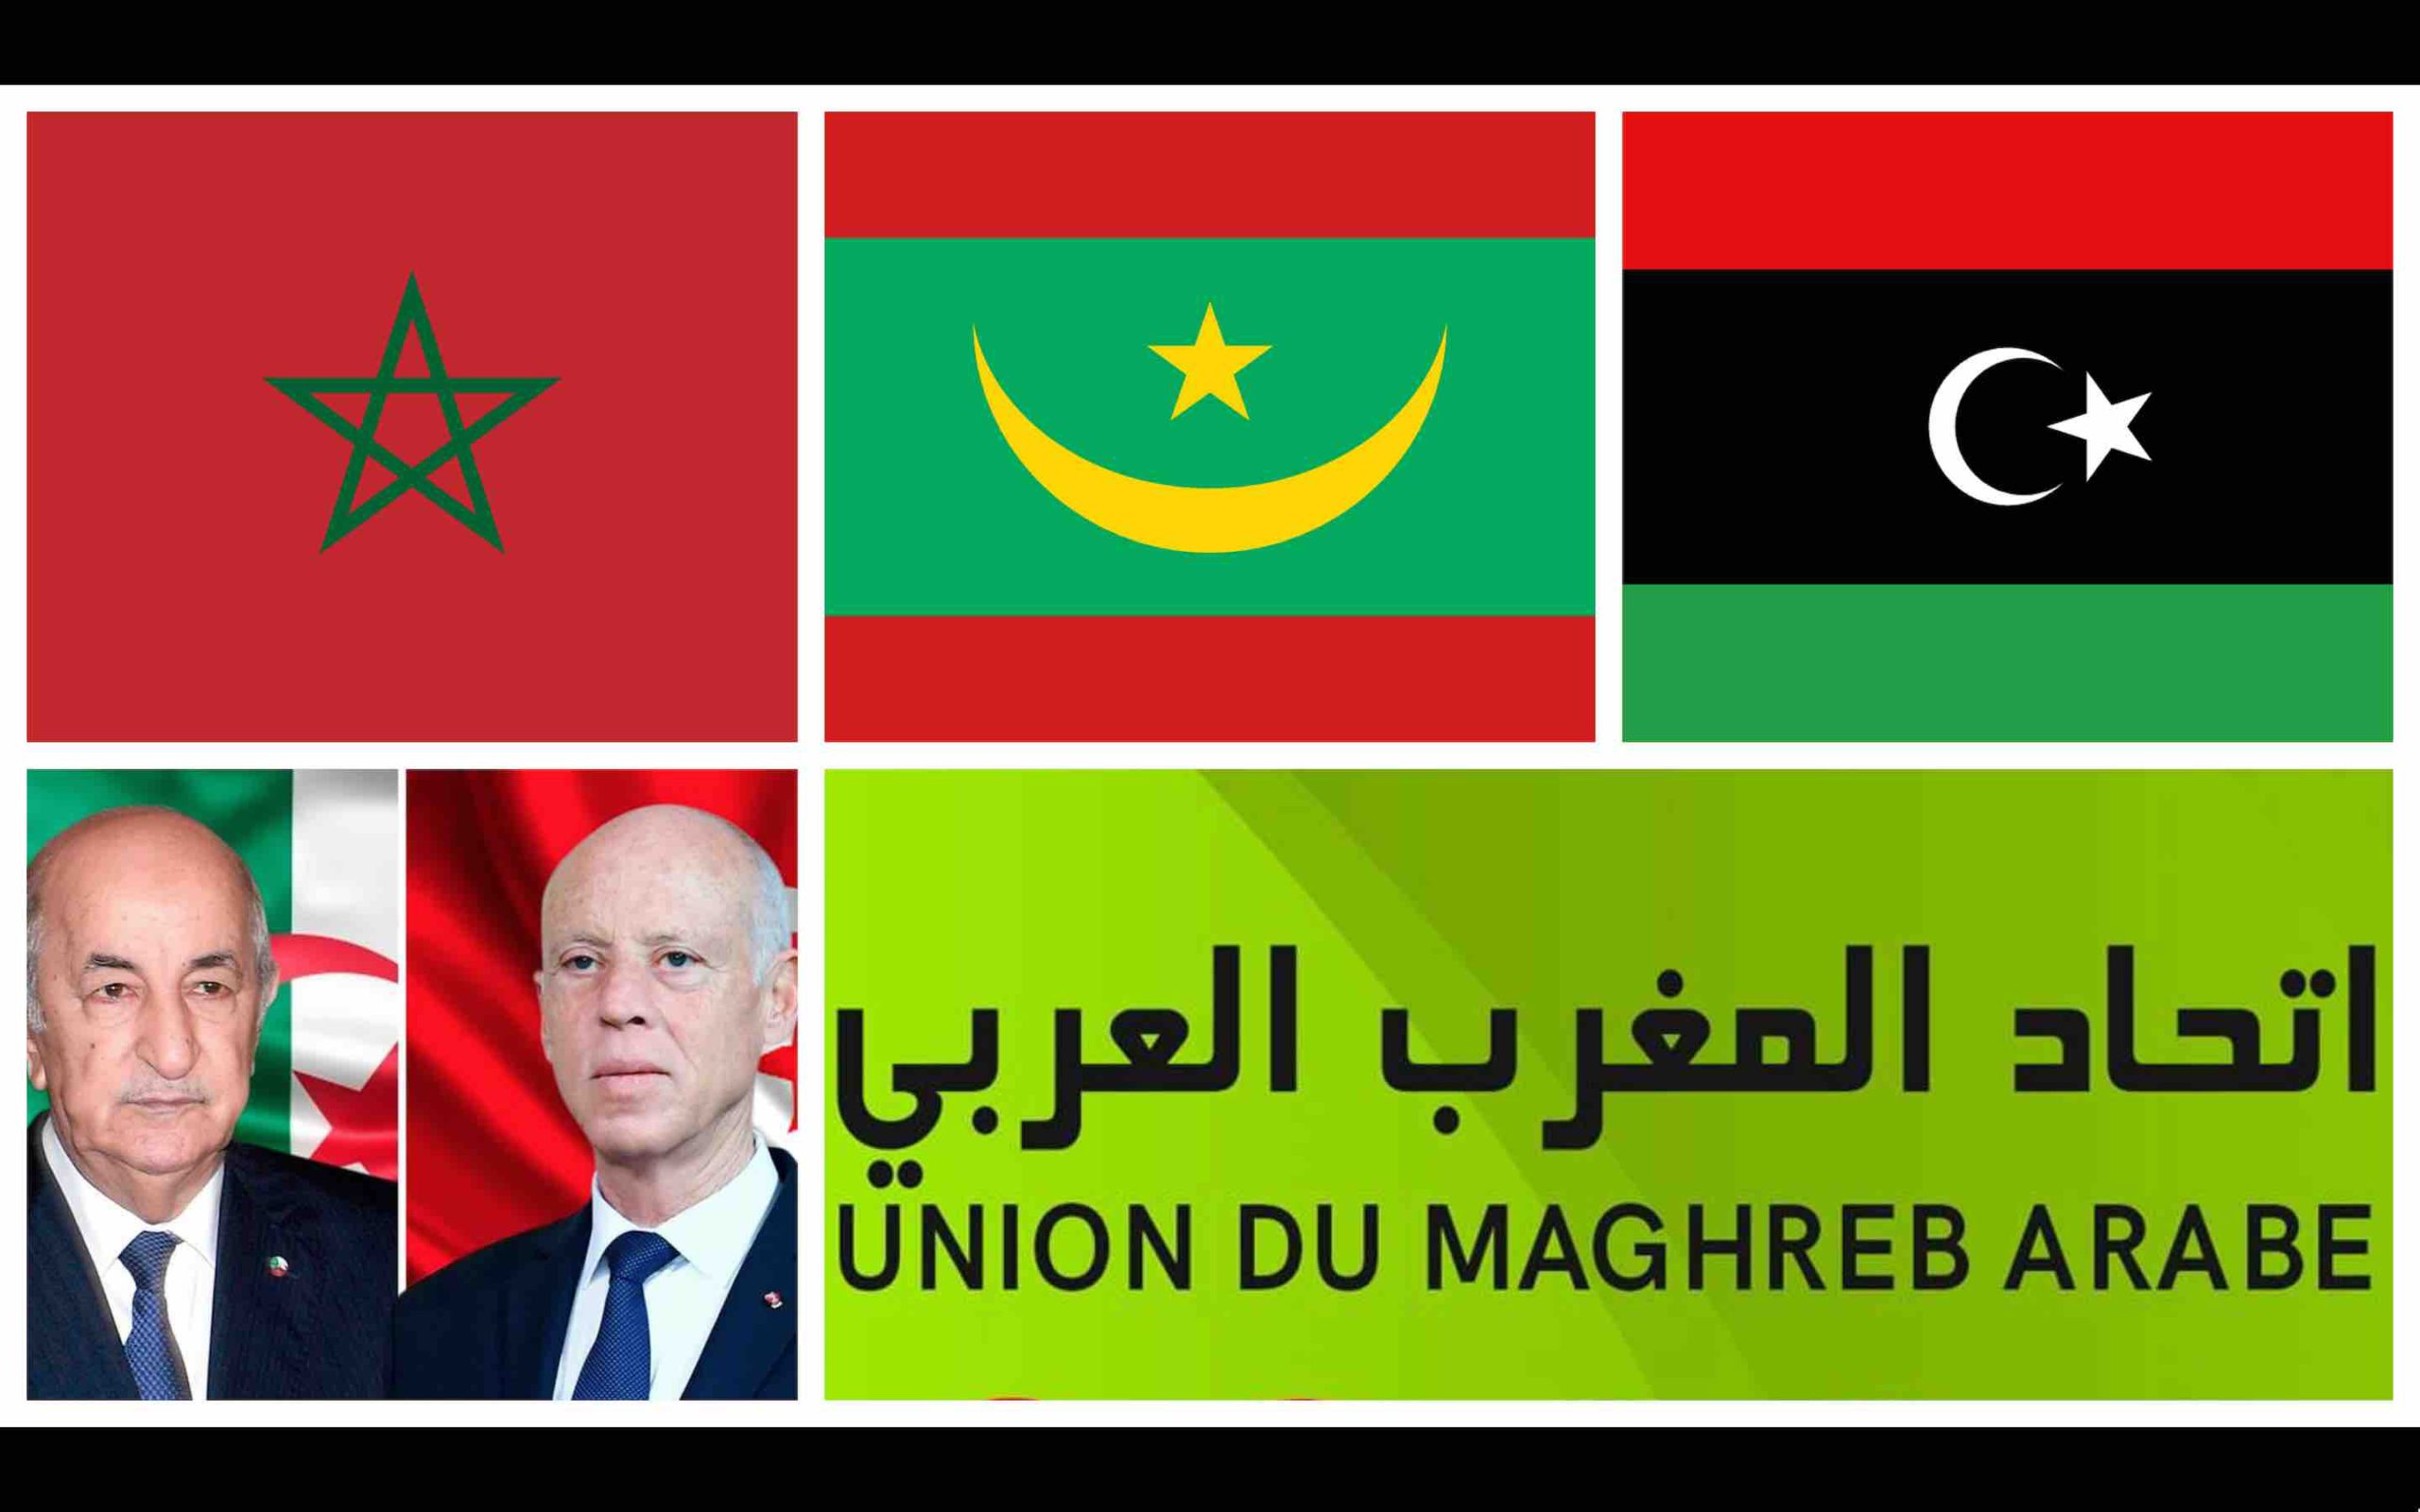 UMA Union Maghreb Arabe Maroc Mauritanie Libye Tunisie